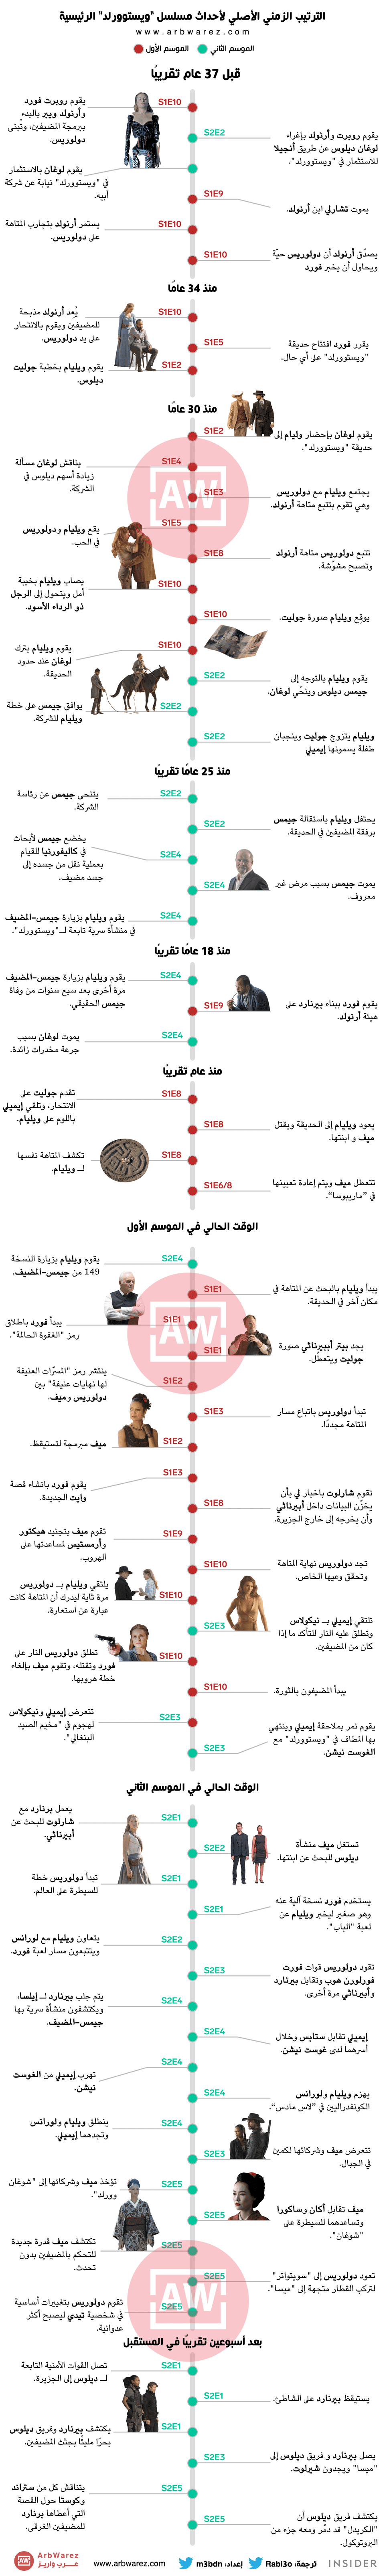 إنفوغرافيك للترتيب الزمني الأصلي لأحداث مسلسل Westworld Arbwarez عرب ويرز